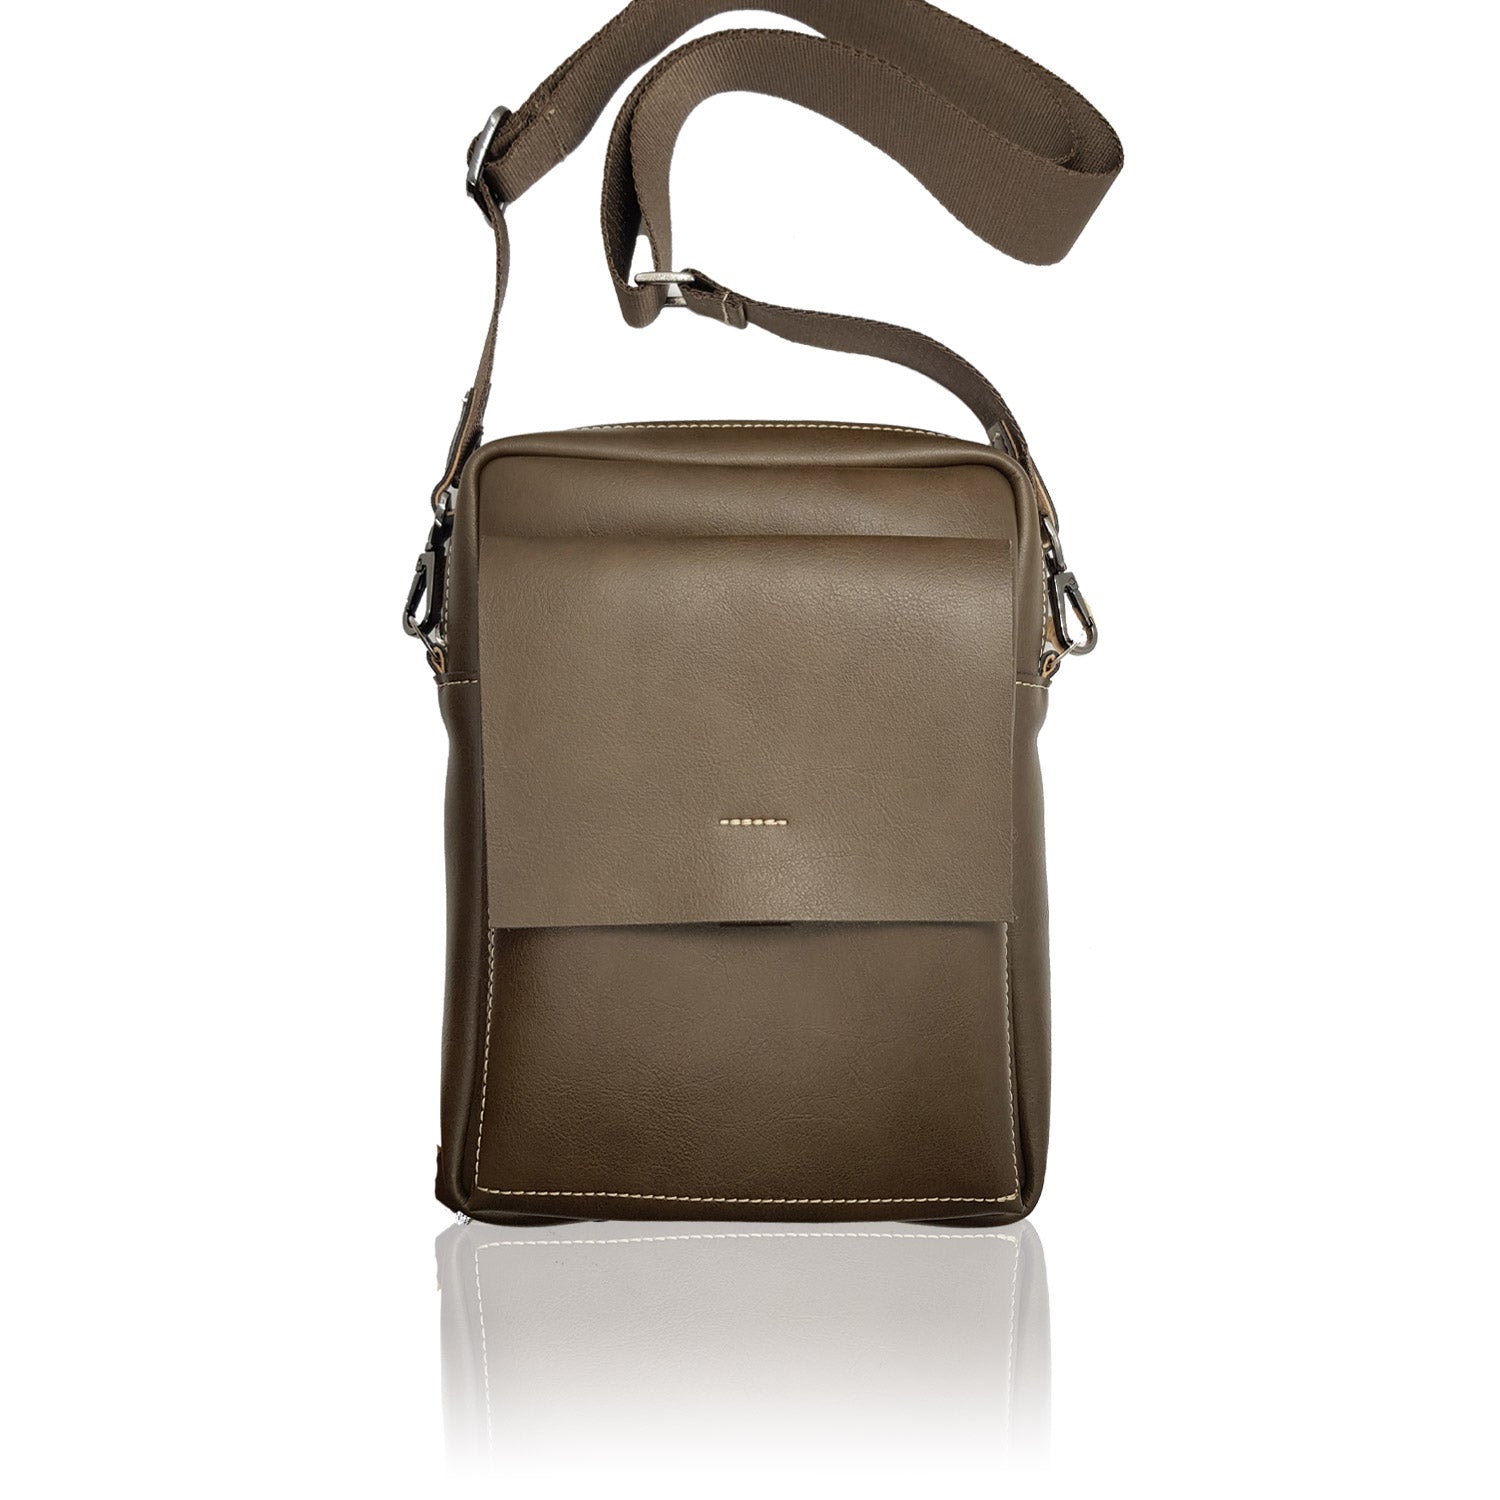 Bärn Messenger Bag - Premium Shoulder bag from L&E Studio